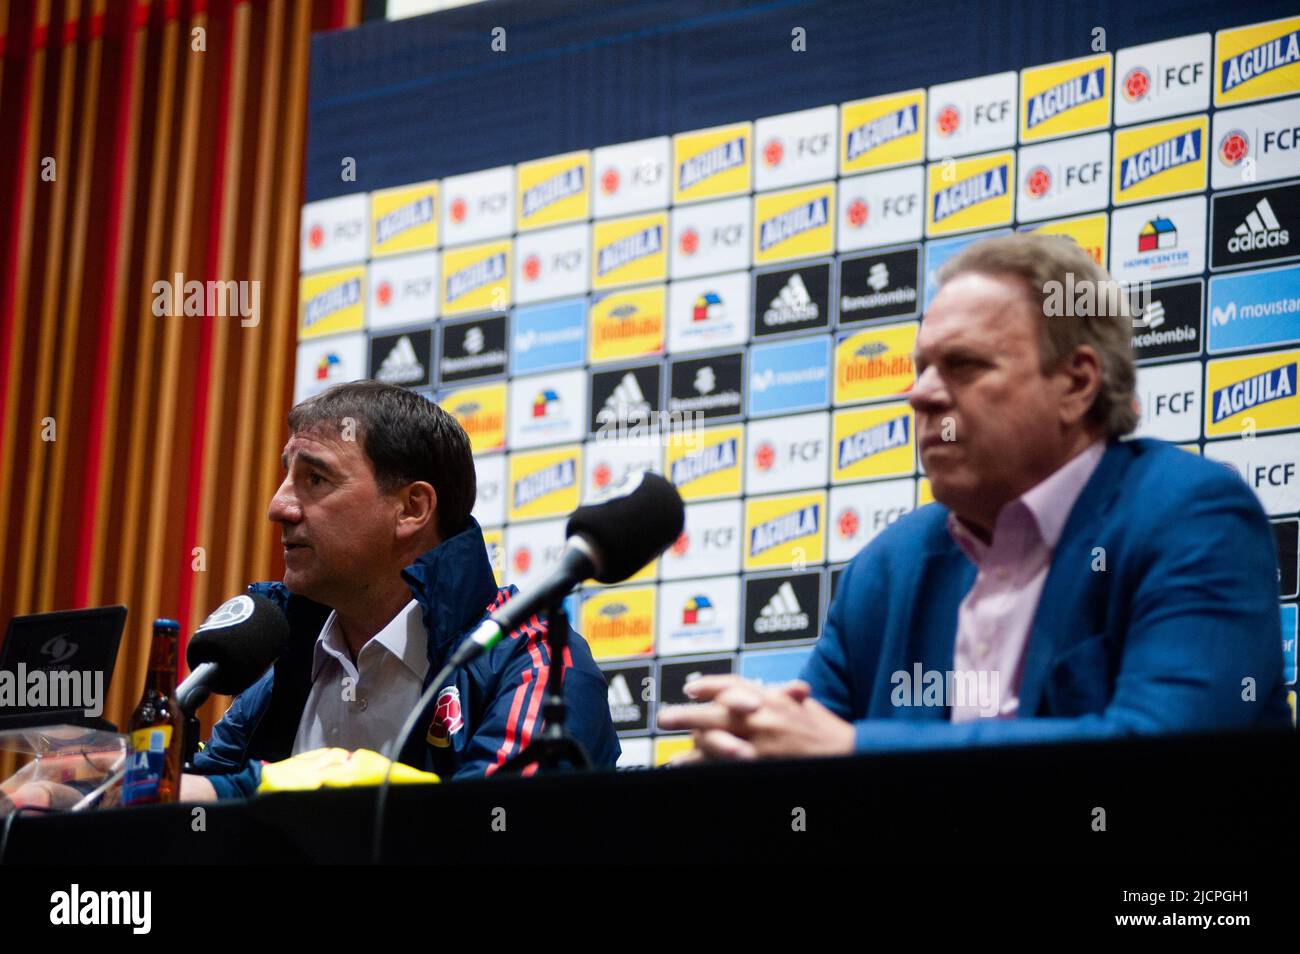 Der kolumbianische Fußballverband stellt seinen neuen Trainer als Ersatz für Reinaldo Rueda in einer Pressekonferenz mit dem neuen Trainer Nestor Loren vor Stockfoto